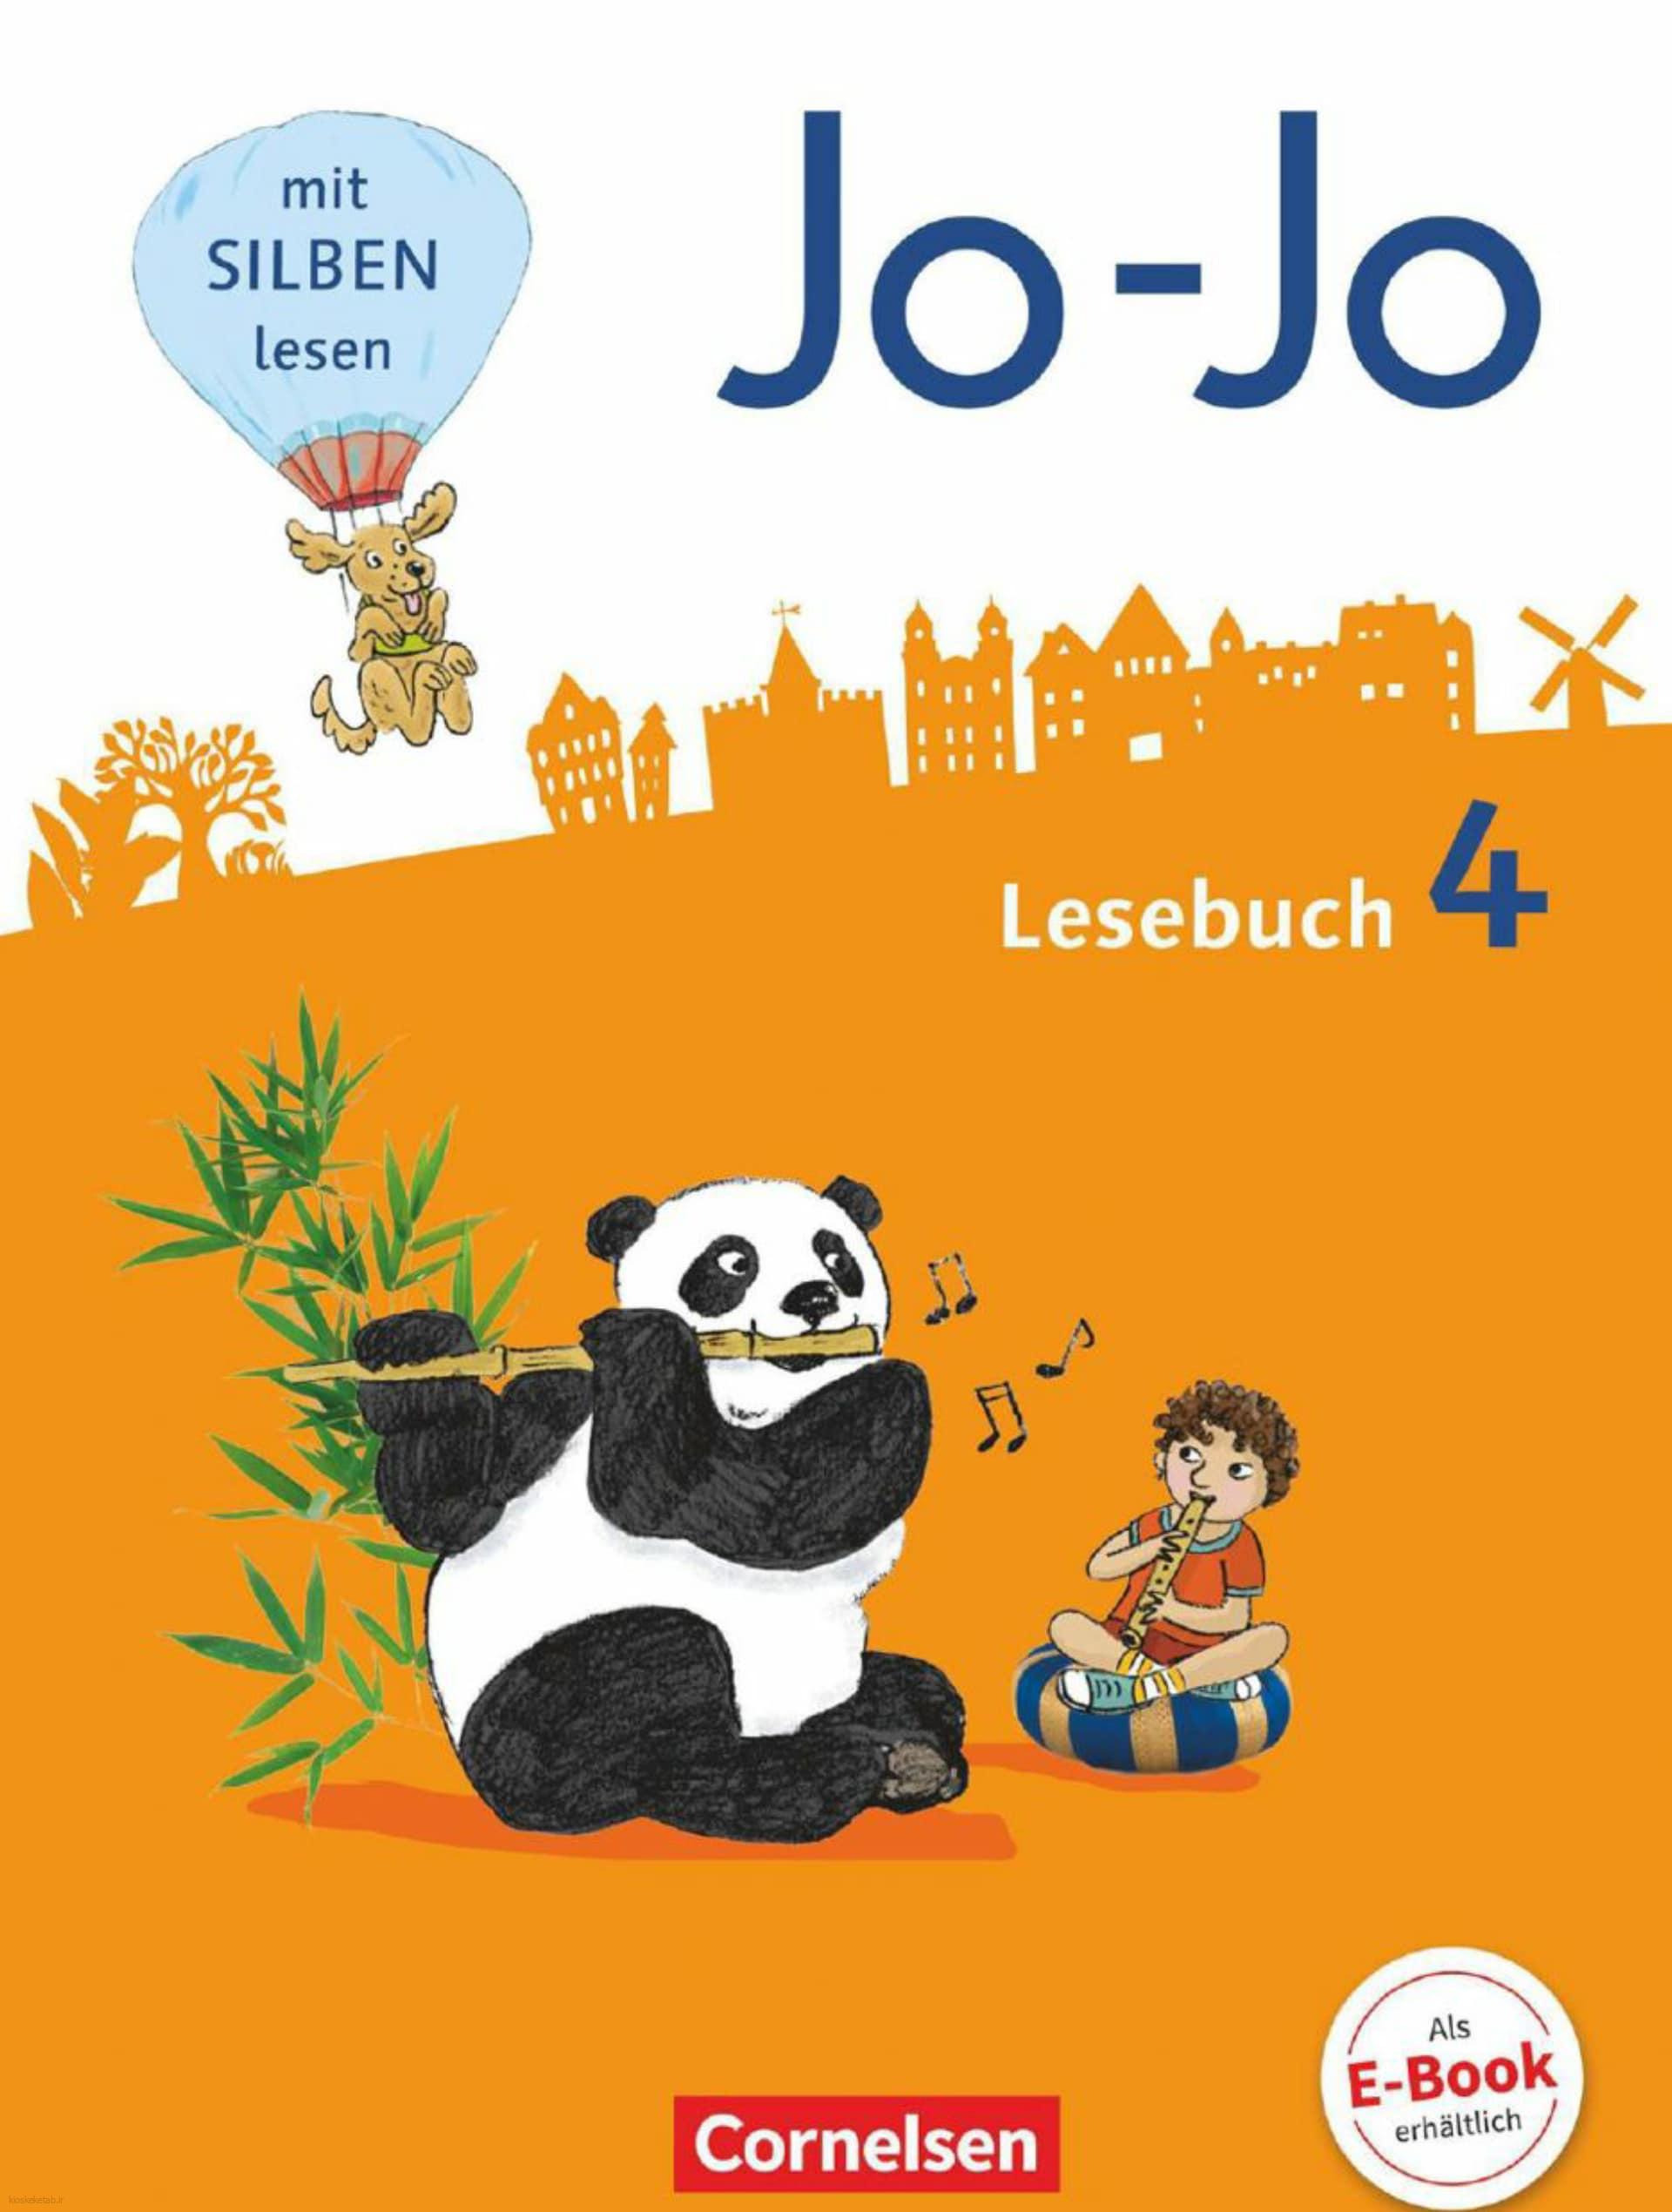 دانلود کتاب آلمانیjo jo lesebuch 4